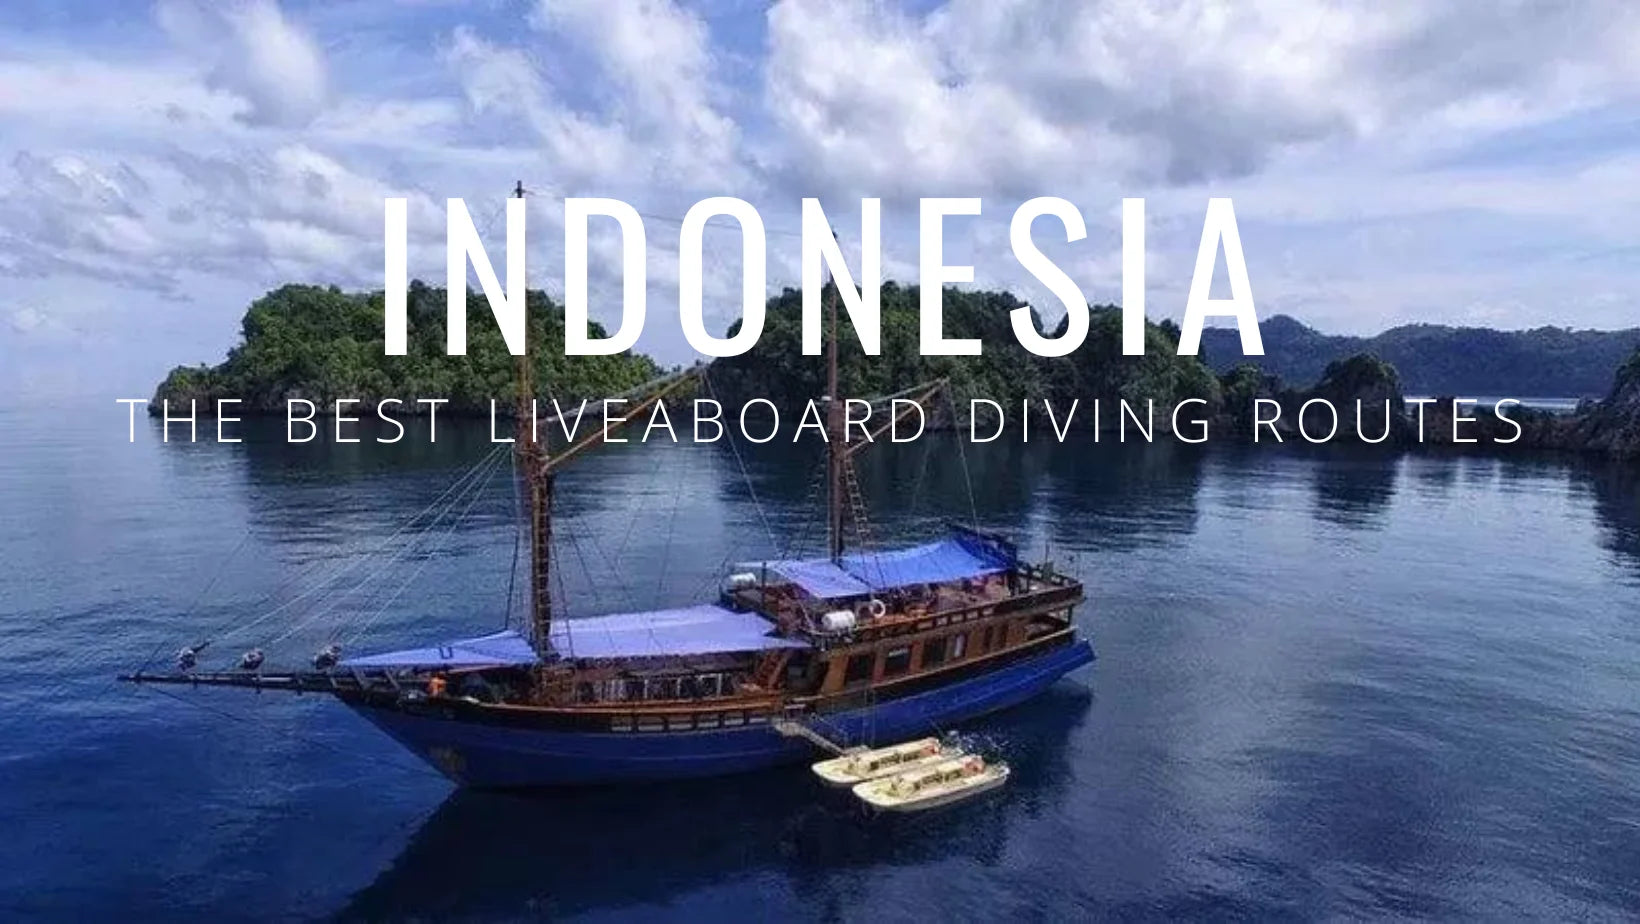 Las 5 mejores rutas de buceo vida a bordo de Indonesia